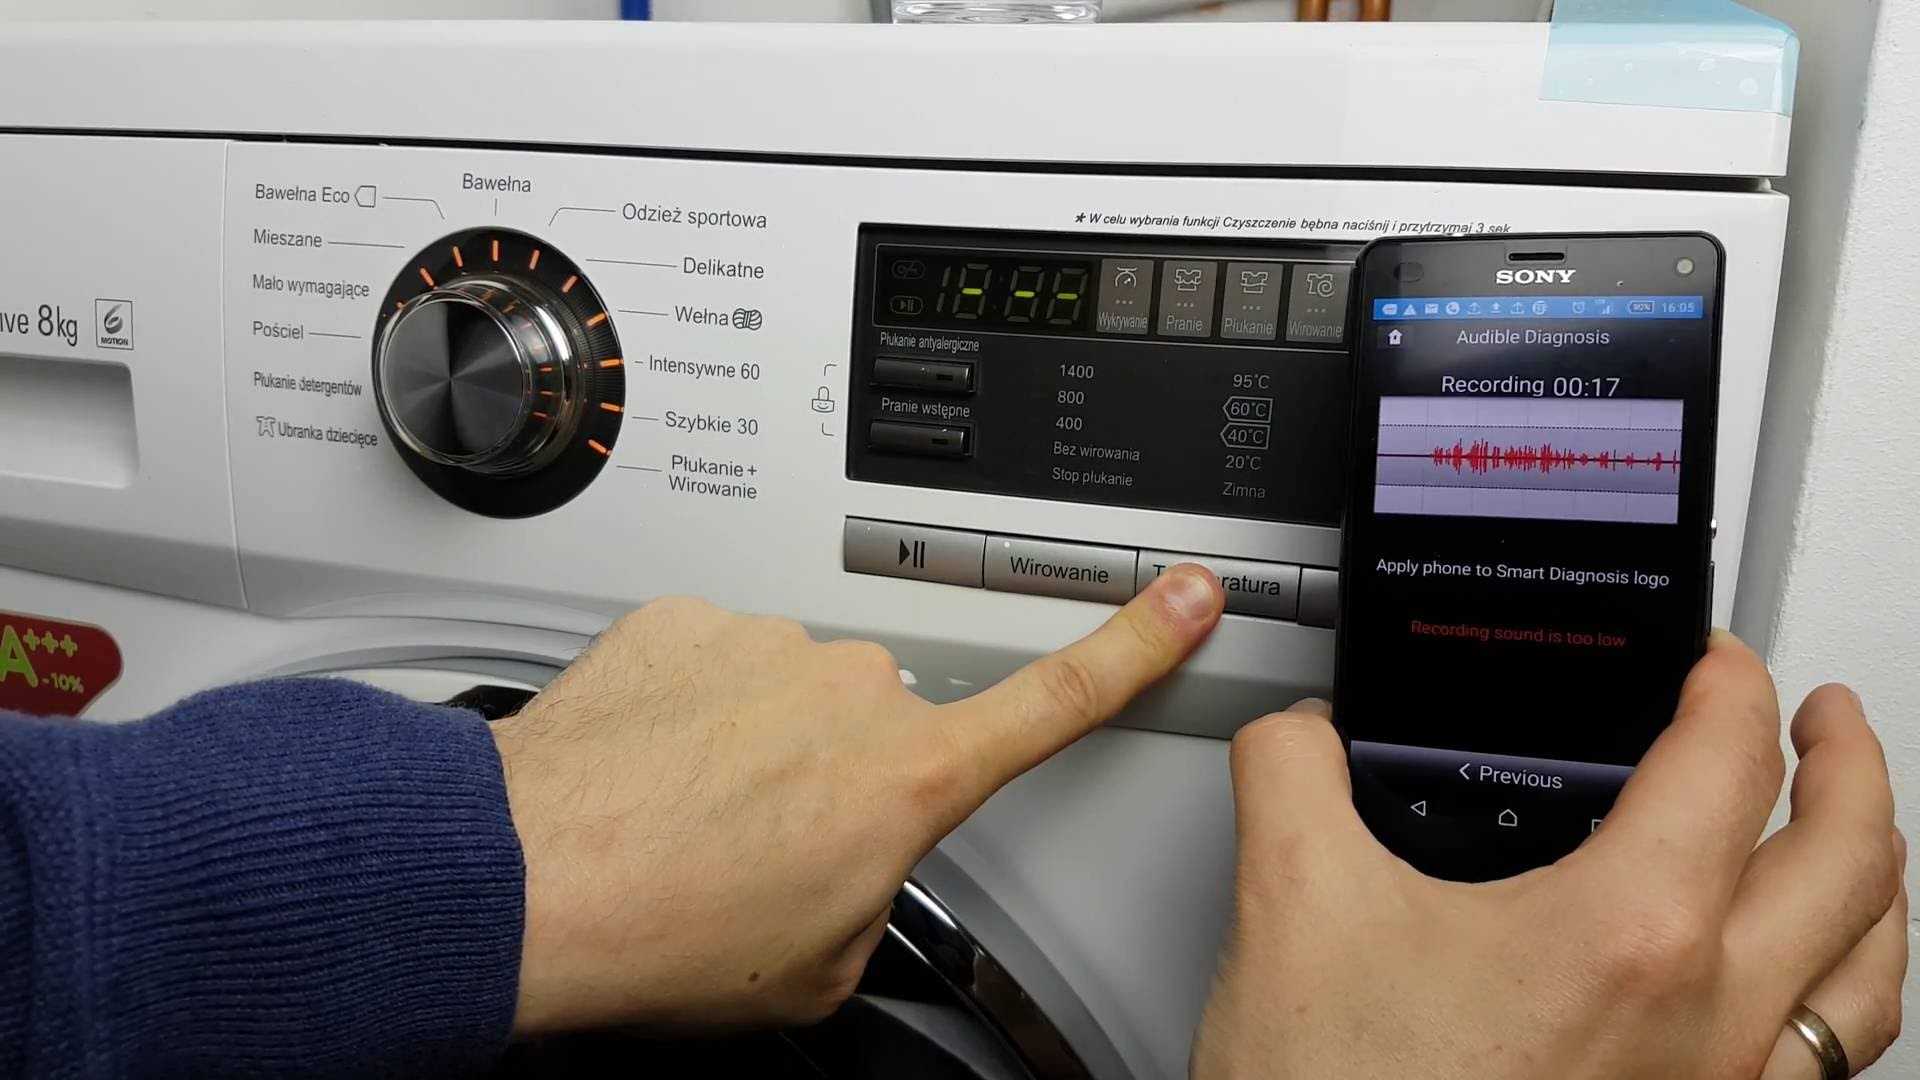 Lg smart diagnosis стиральная машина, инструкция как пользоваться